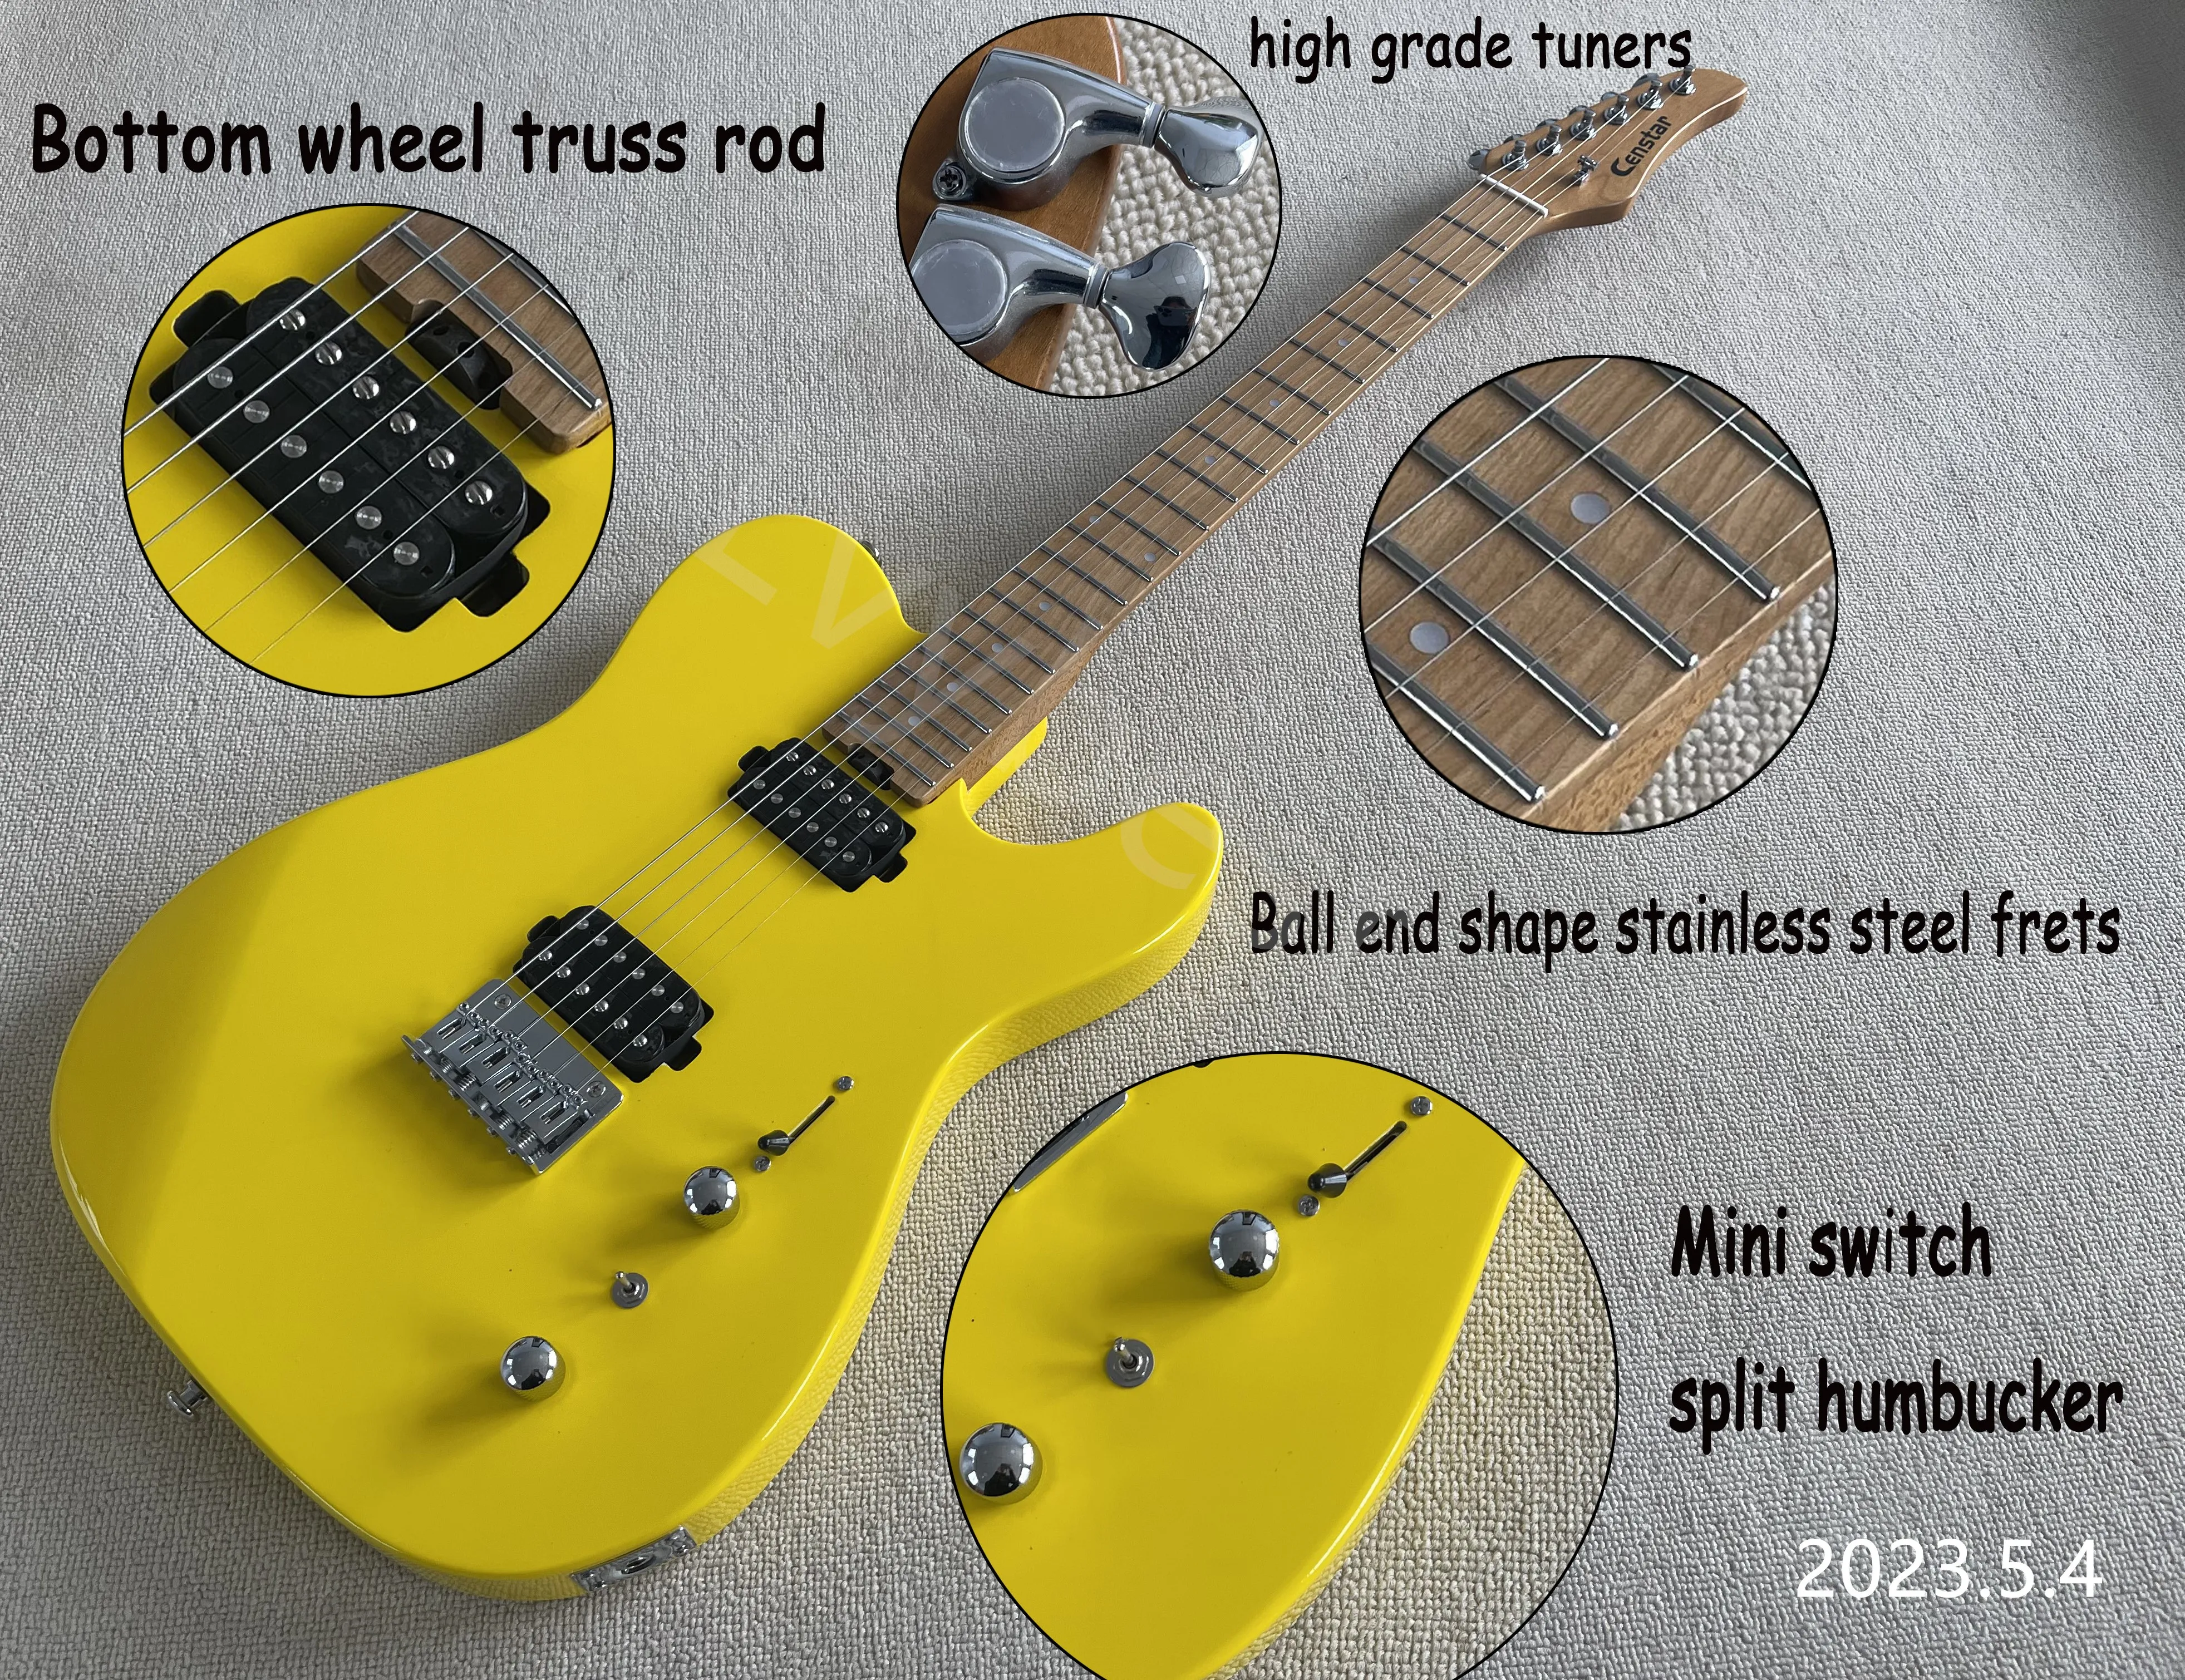 Lager! Elektrisk gitarr färsk gul färdig rostad lönnhals och fingrabräda prickar inlay split mini switch ball end rainess st